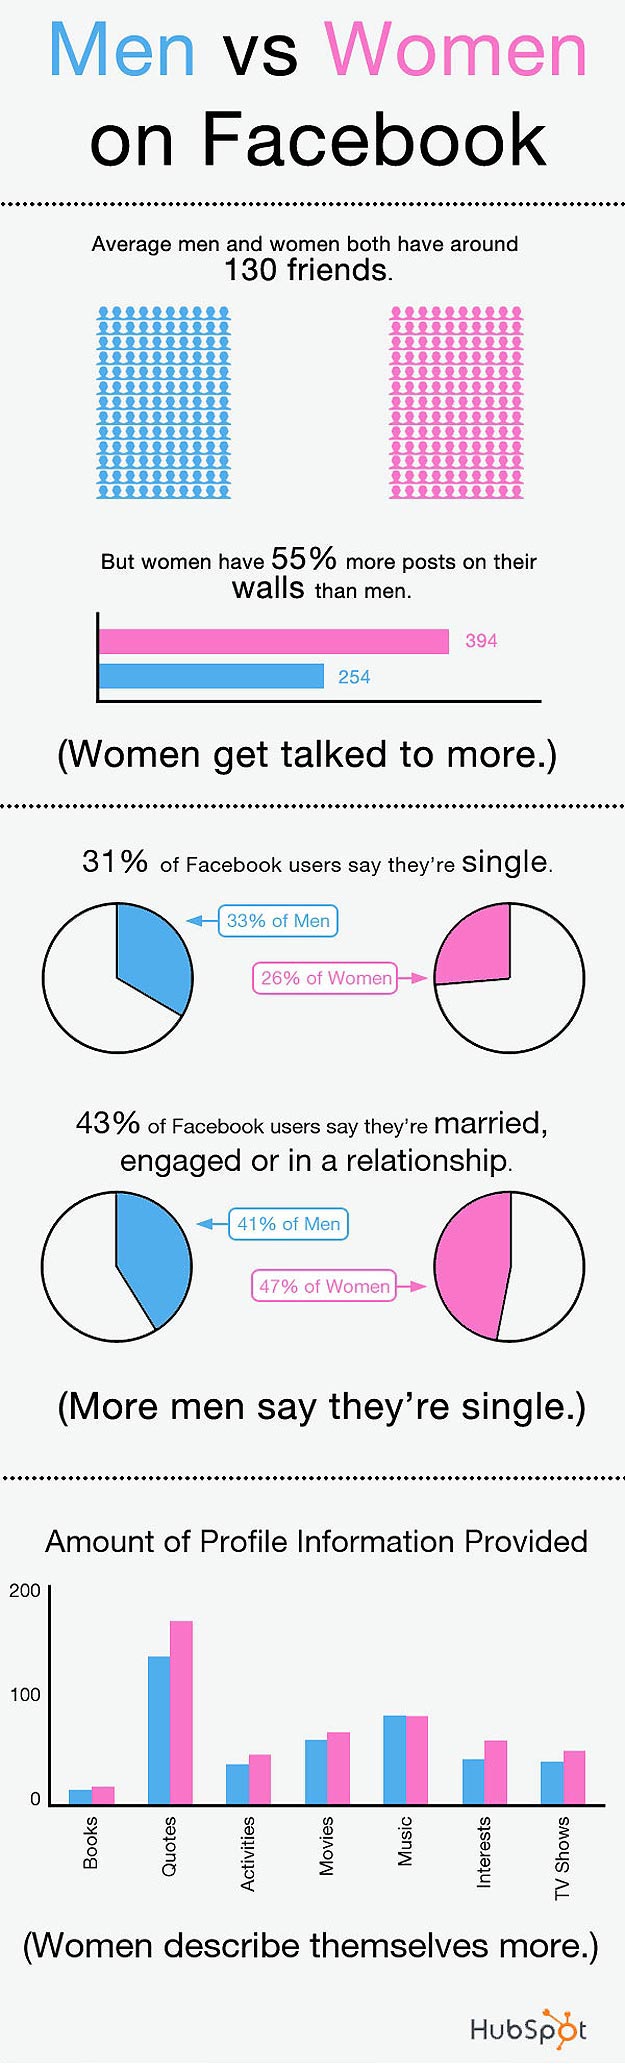 Men vs Women on Facebook